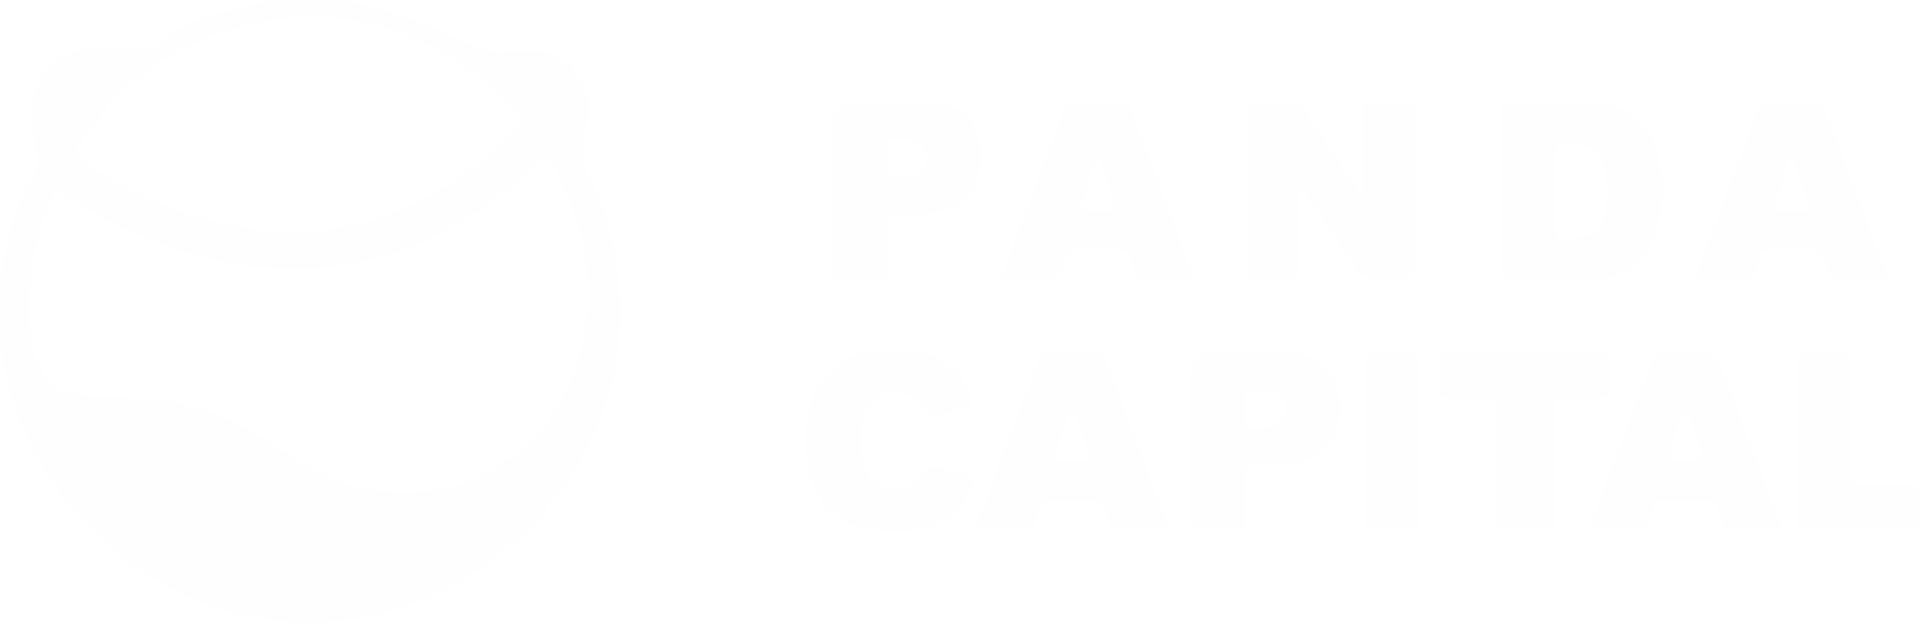 PANDA CAPITAL